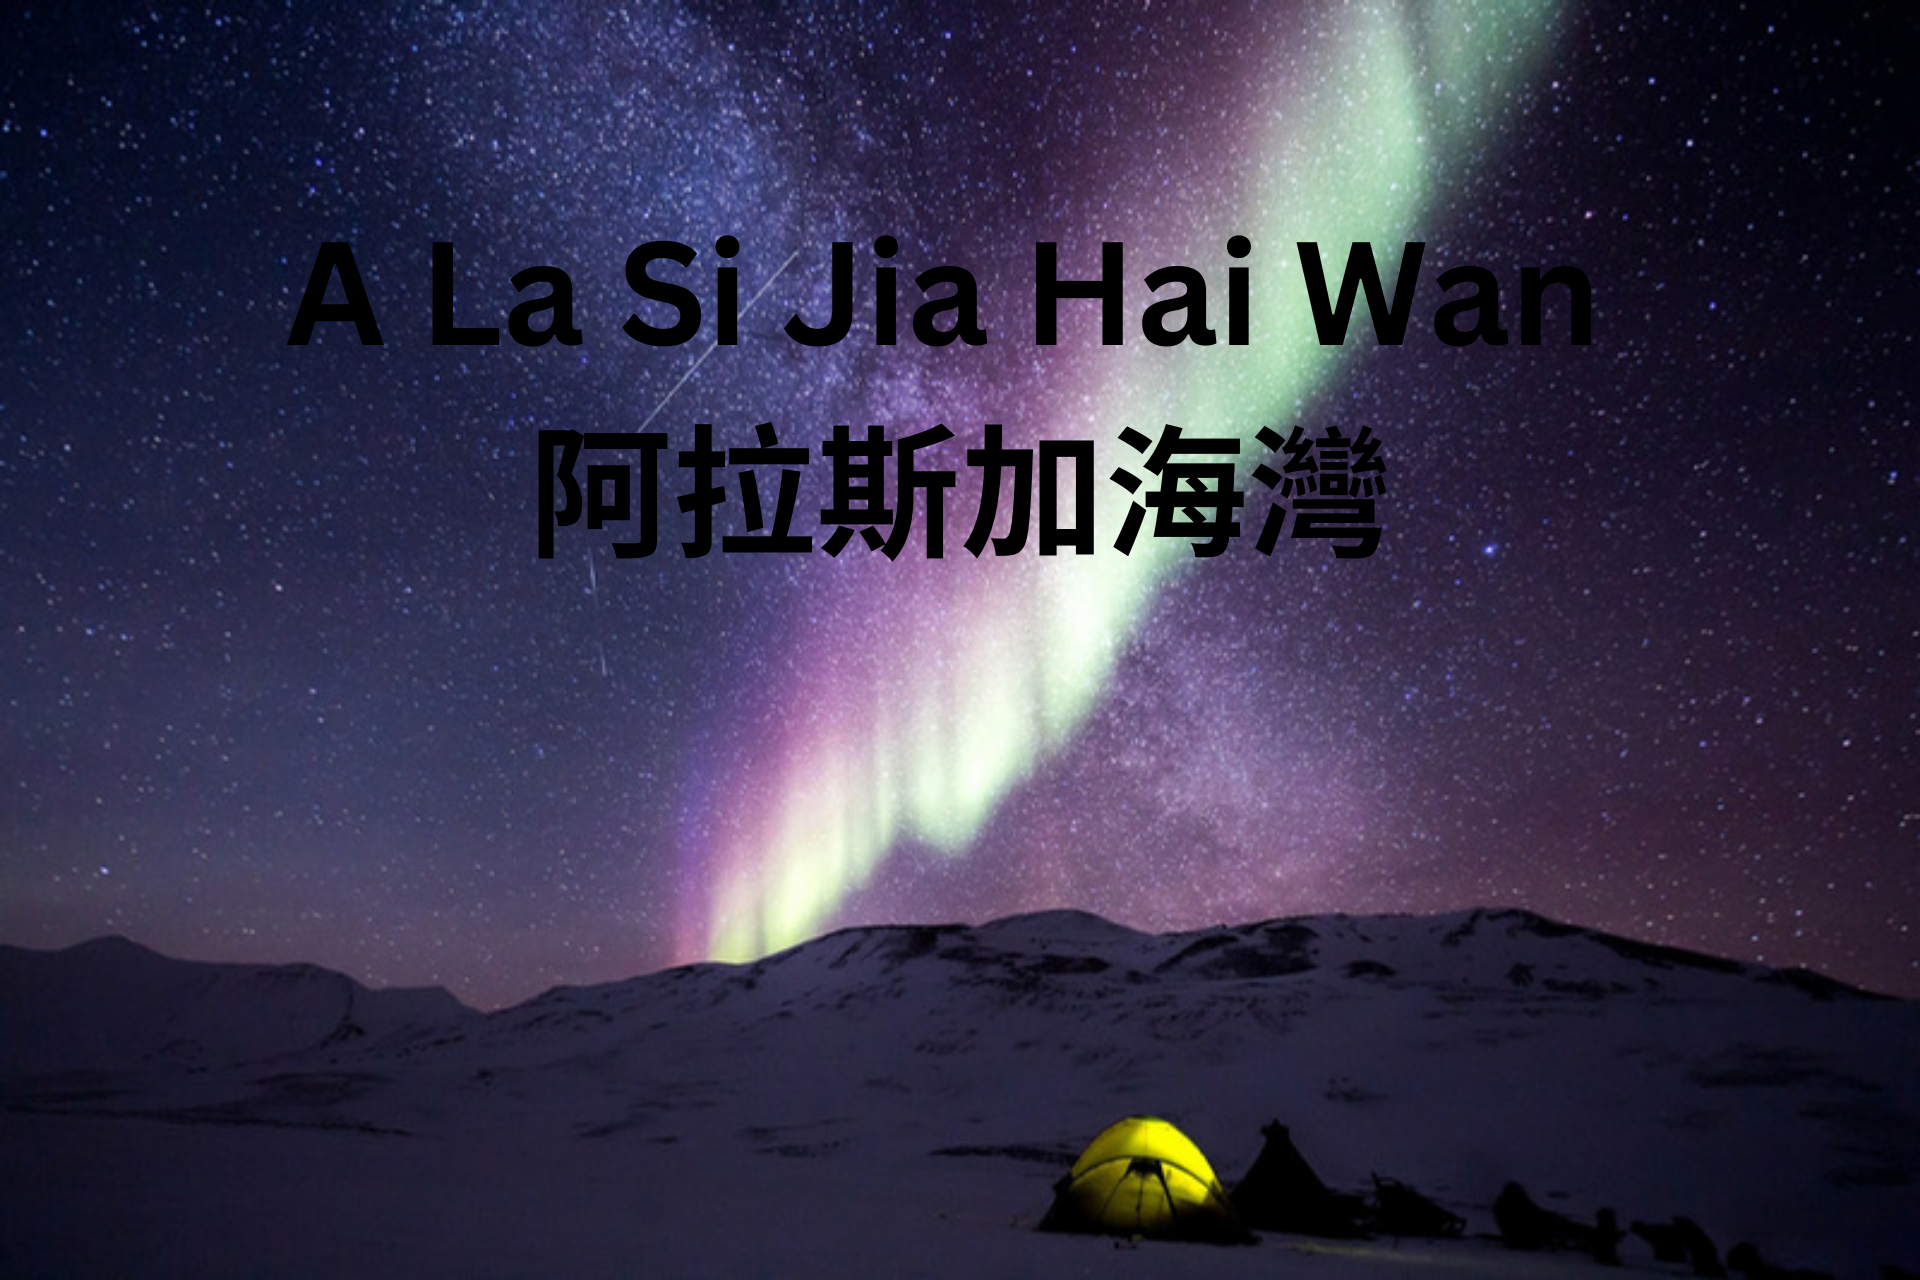 A La Si Jia Hai Wan 阿拉斯加海灣